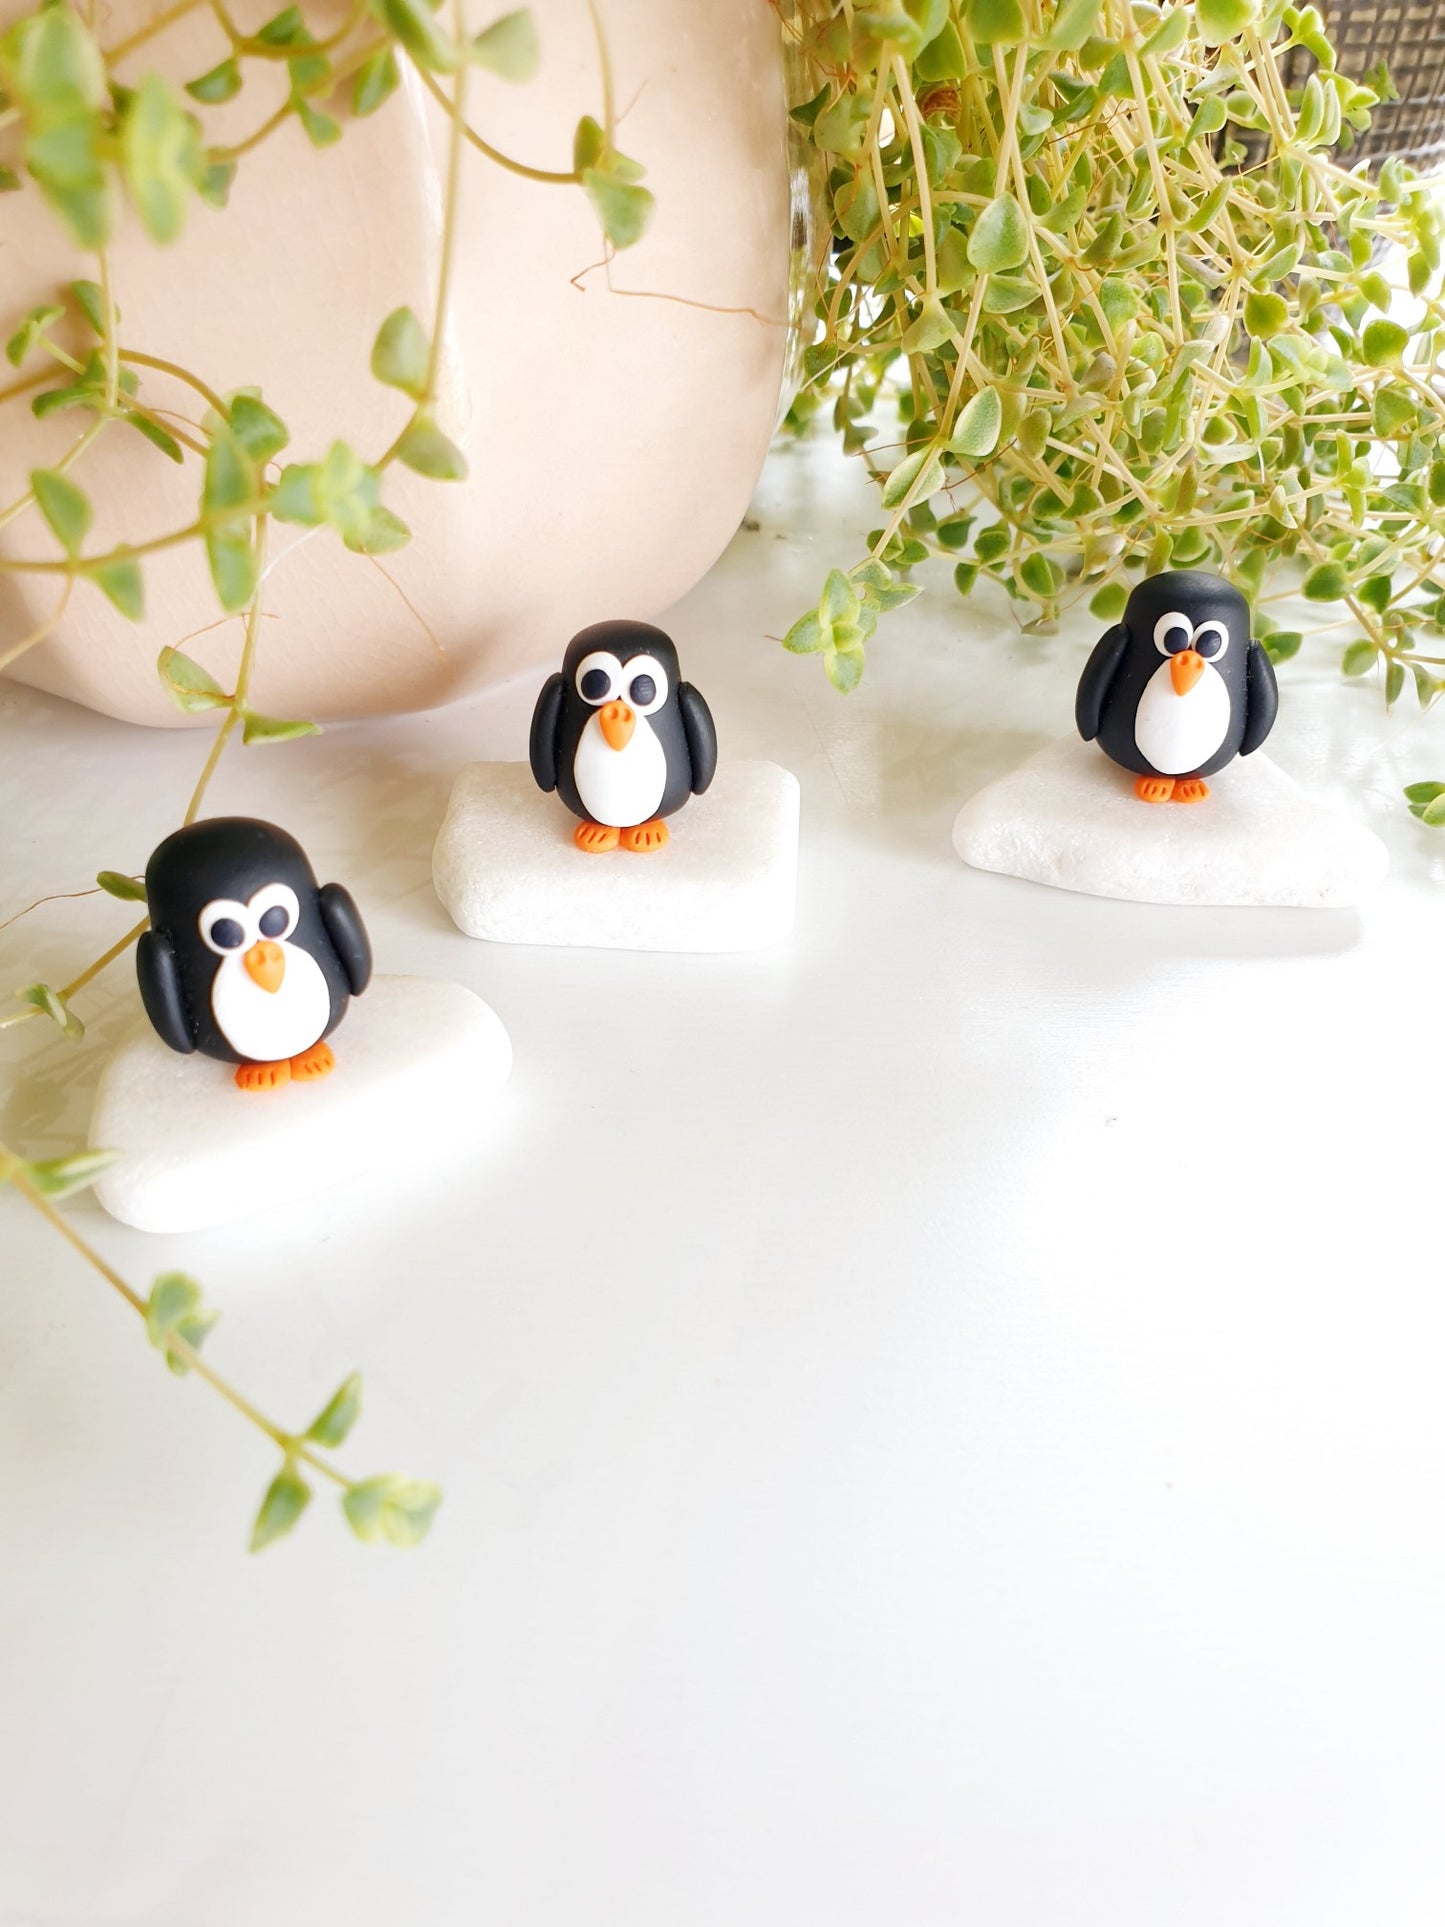 Fairy Penguin miniature sculpture